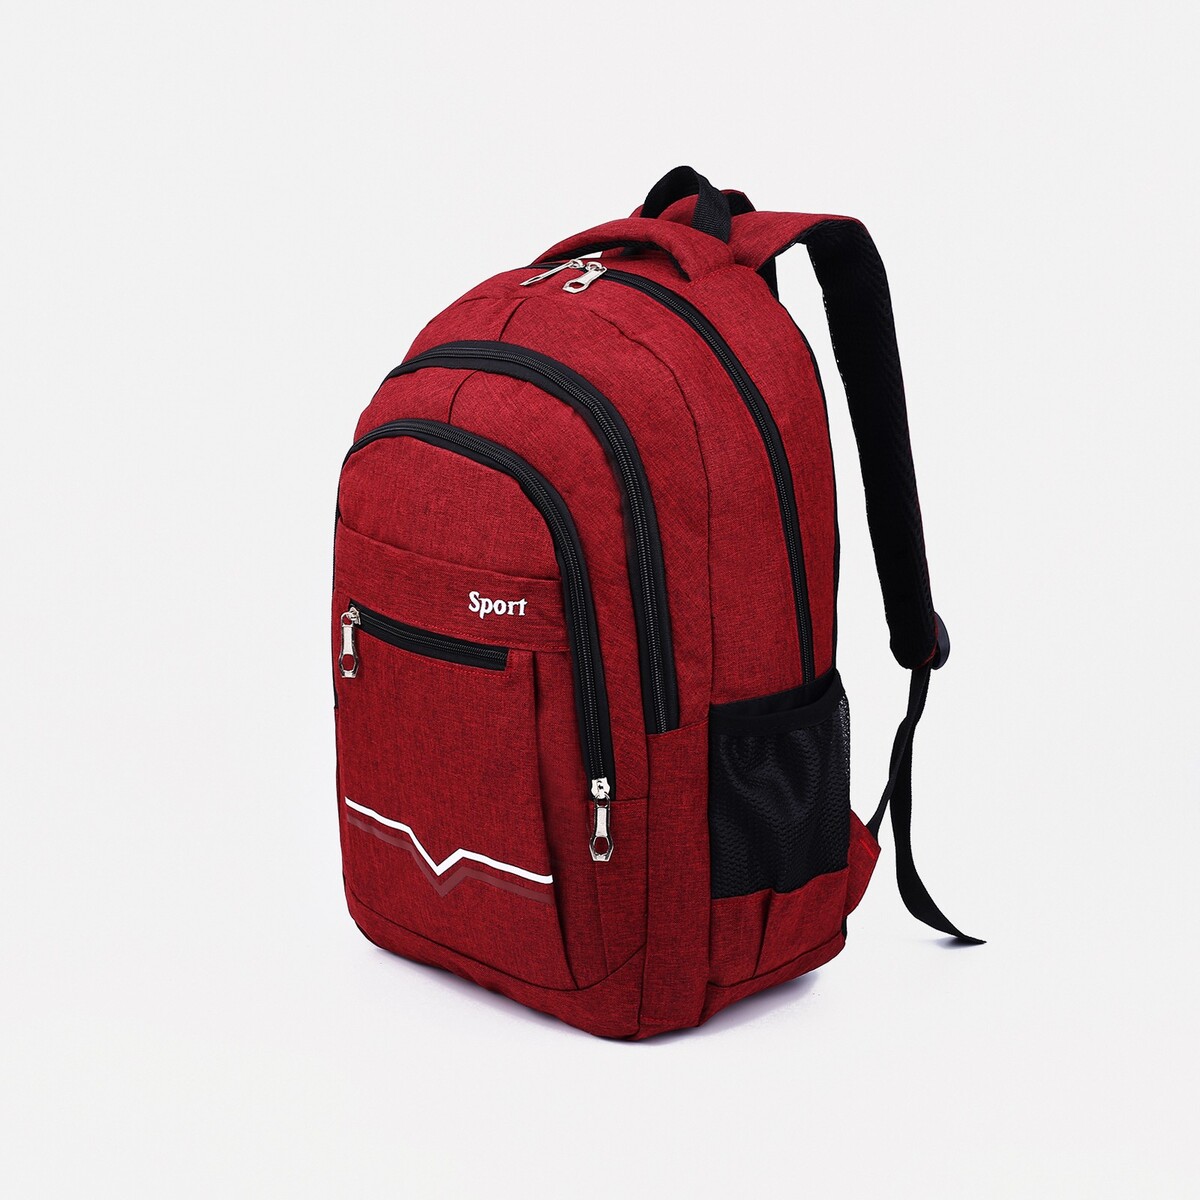 Рюкзак на молнии, 2 наружных кармана, цвет бордовый рюкзак классики 28 11 38 см 1 отд на молнии 4 н кармана бордовый